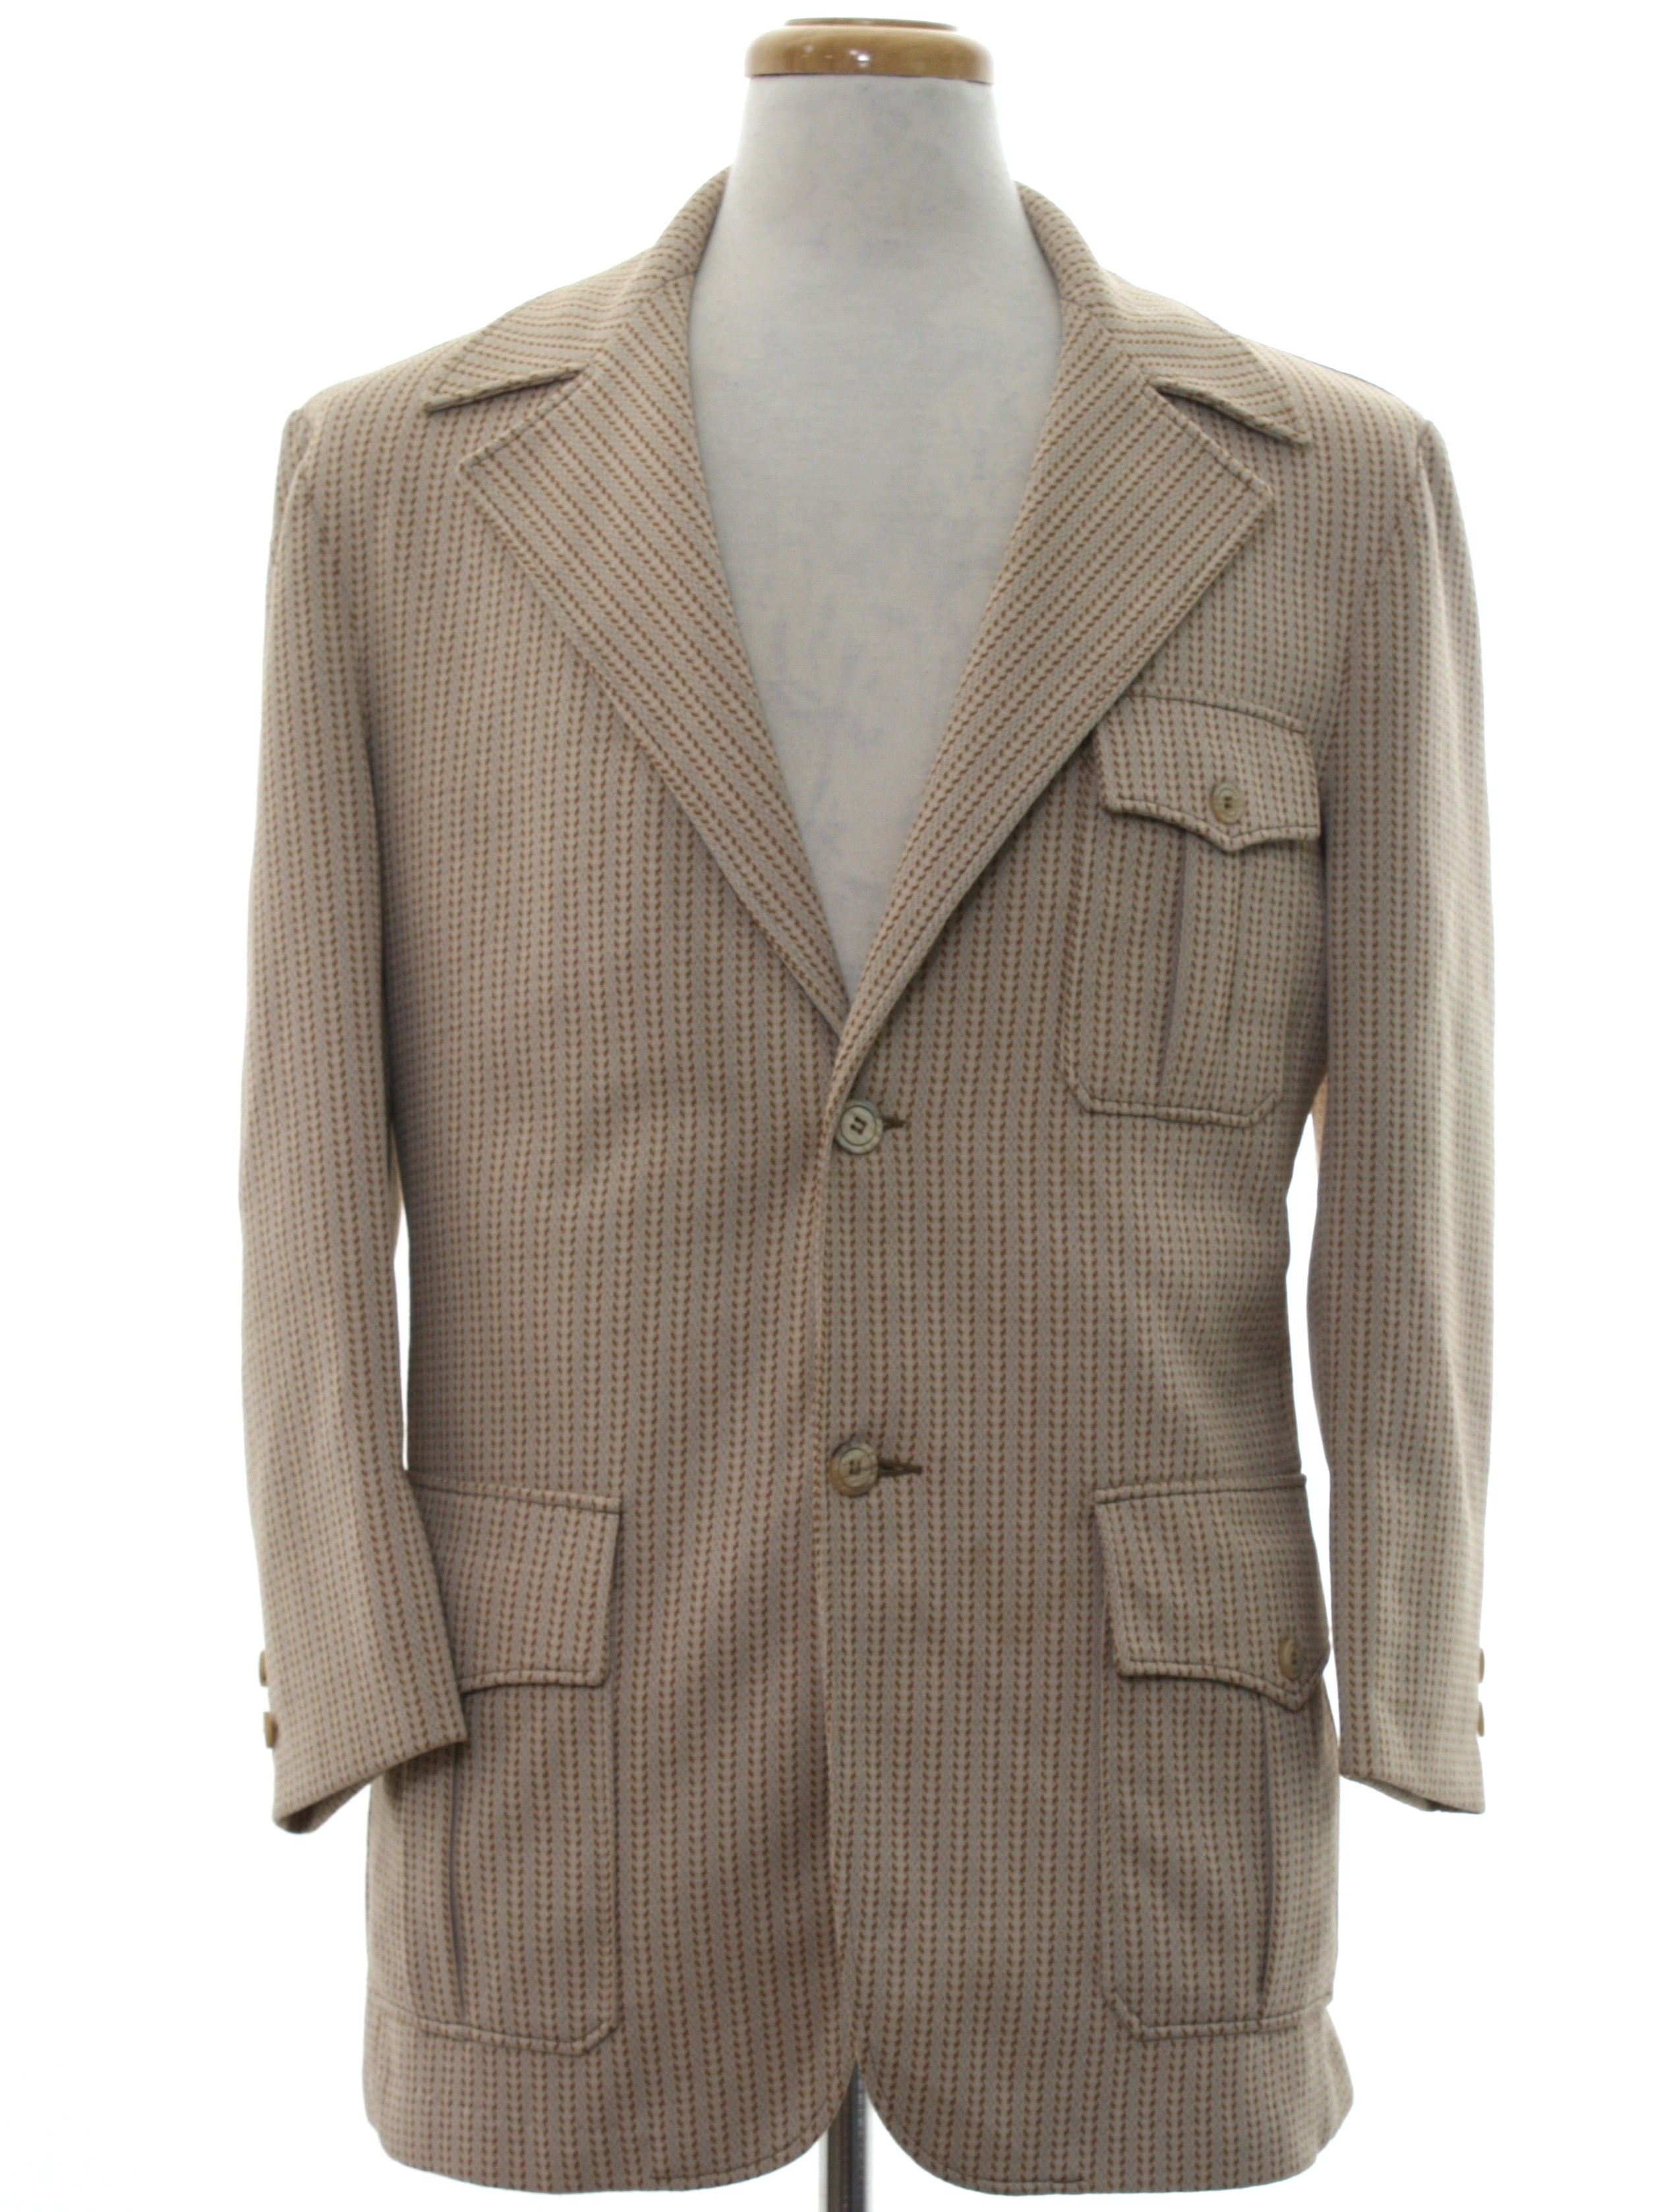 Retro 1970's Jacket (Days Sportswear) : 70s -Days Sportswear- Mens tan ...